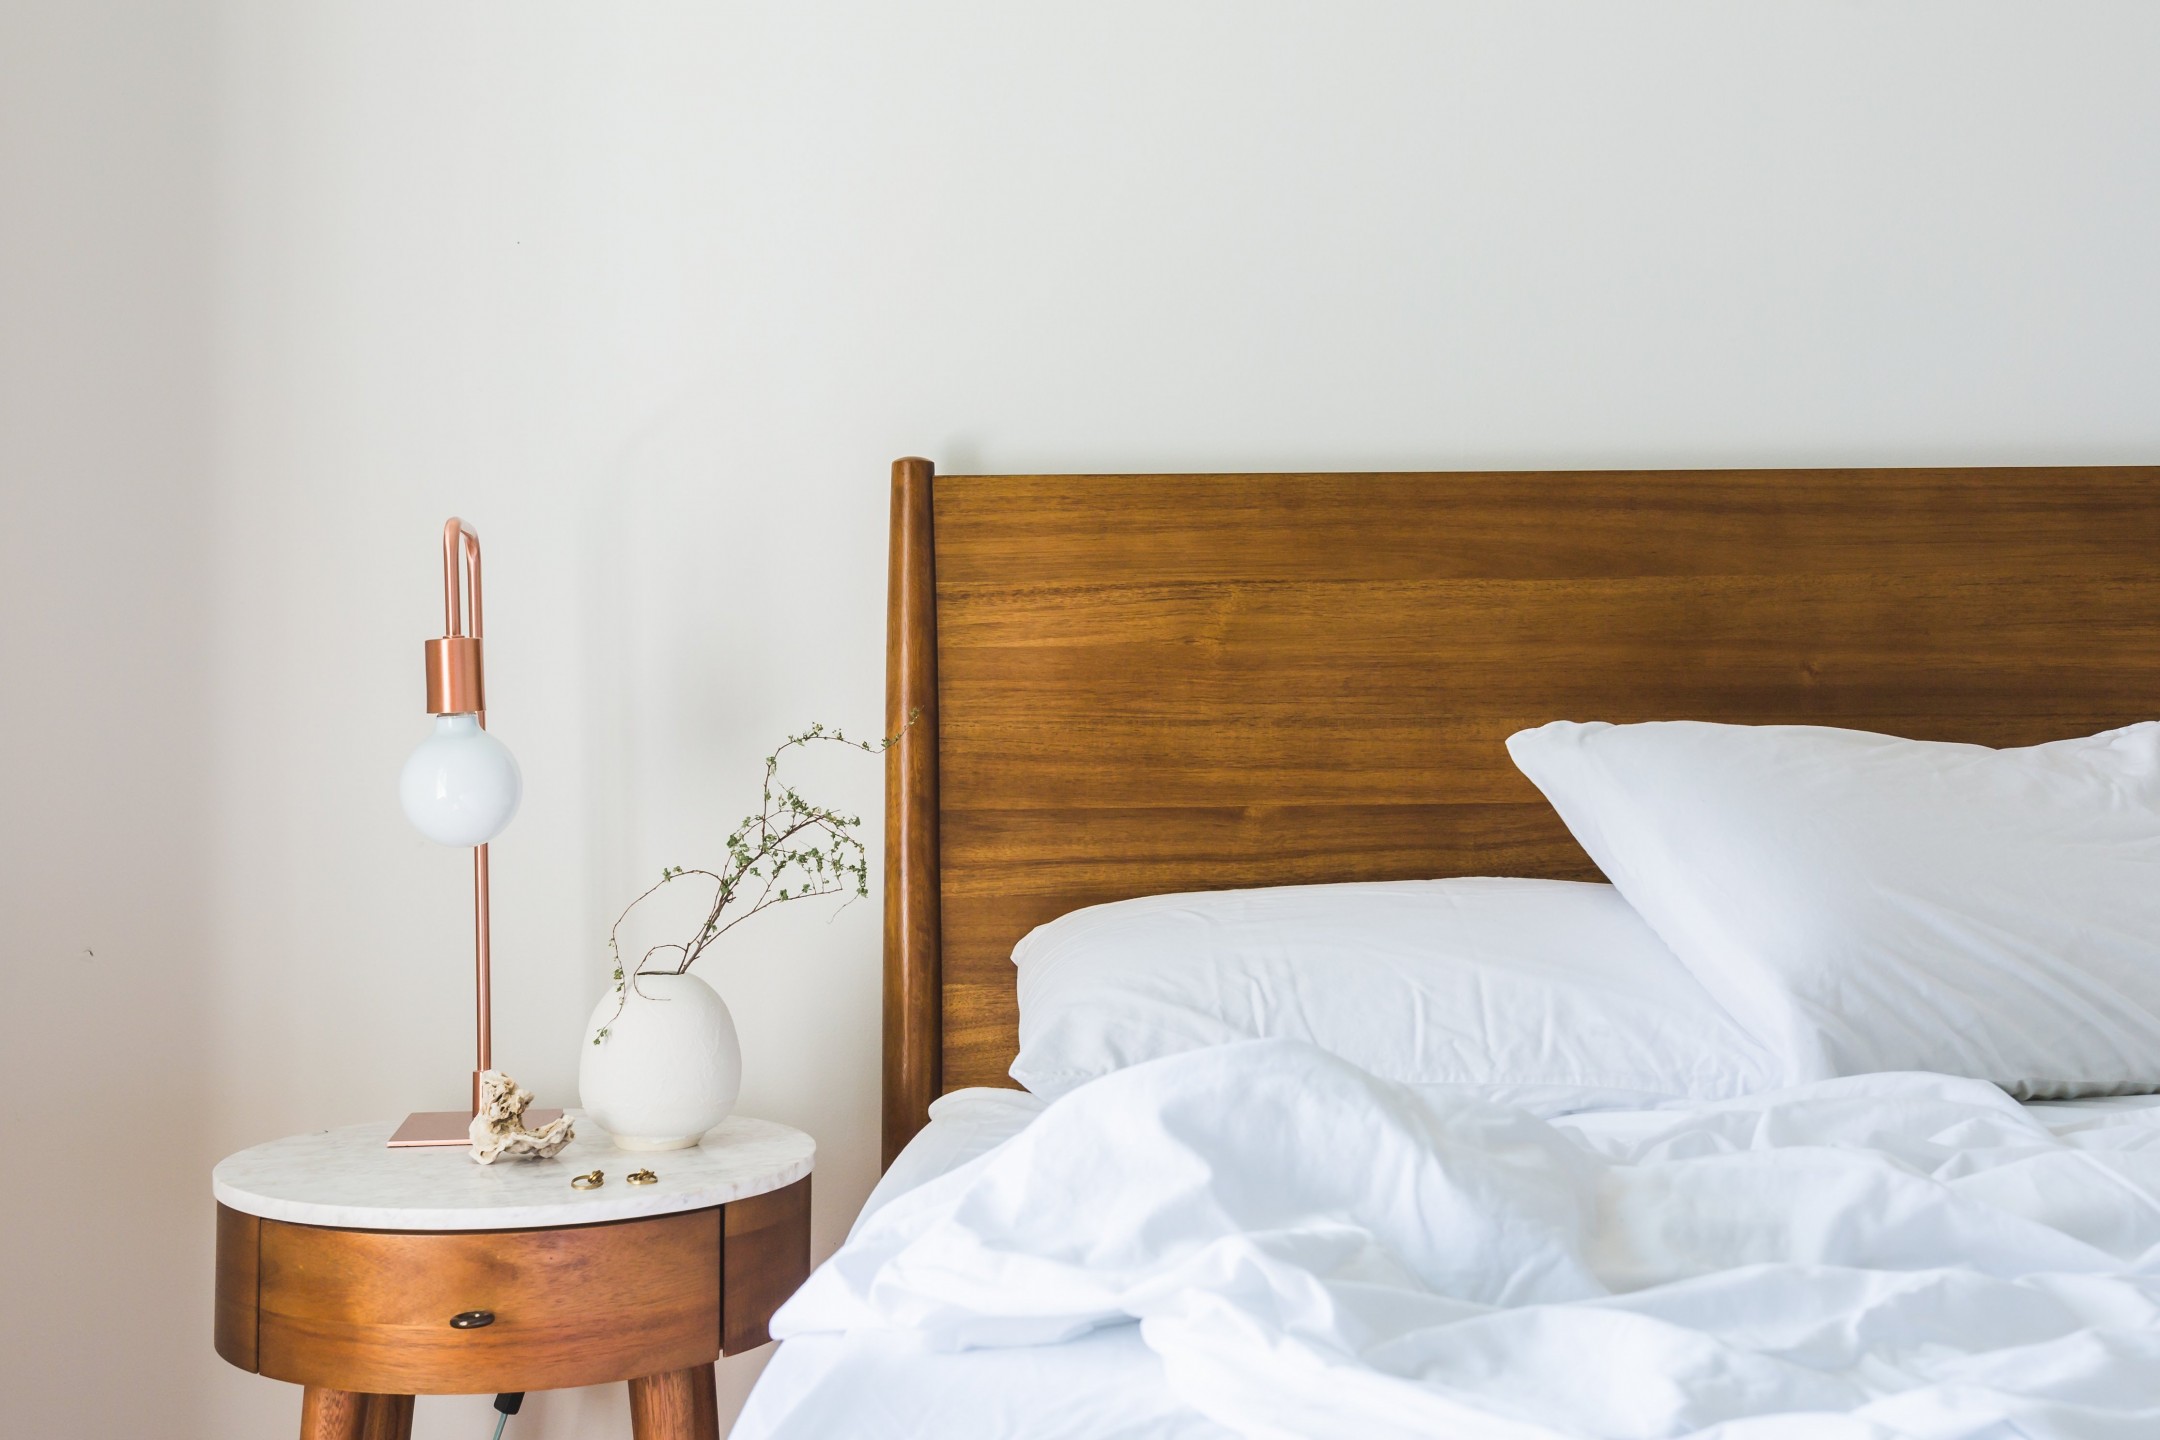 squarerooms-wooden-bed-bedroom-blanket-clean-bedside-table-lamp-light